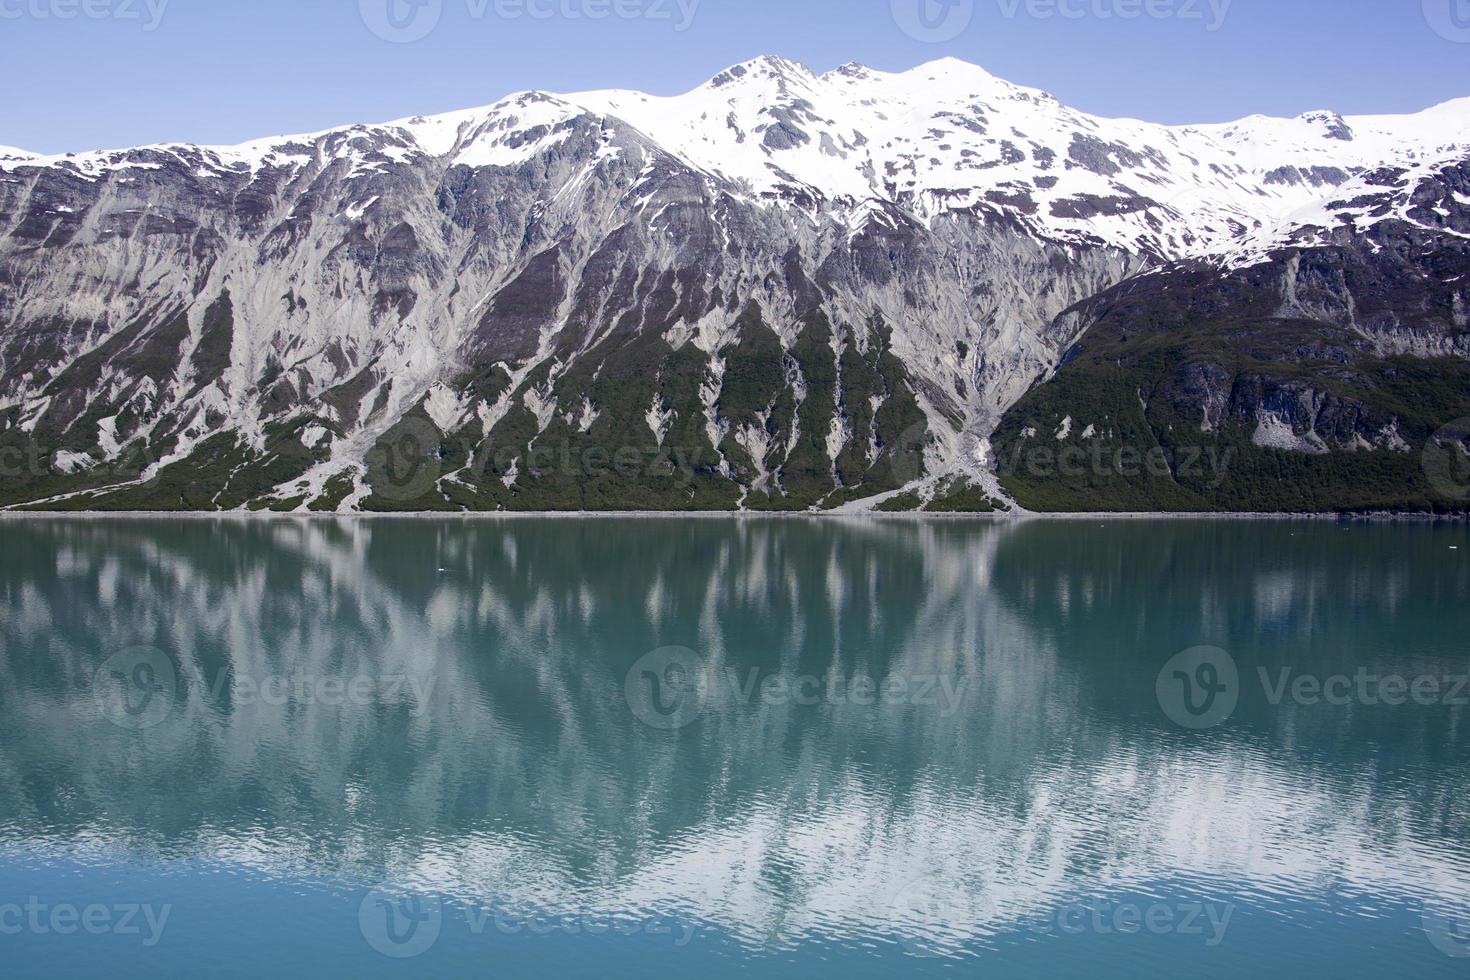 glaciar bahía nacional parque Nevado montaña reflexiones foto